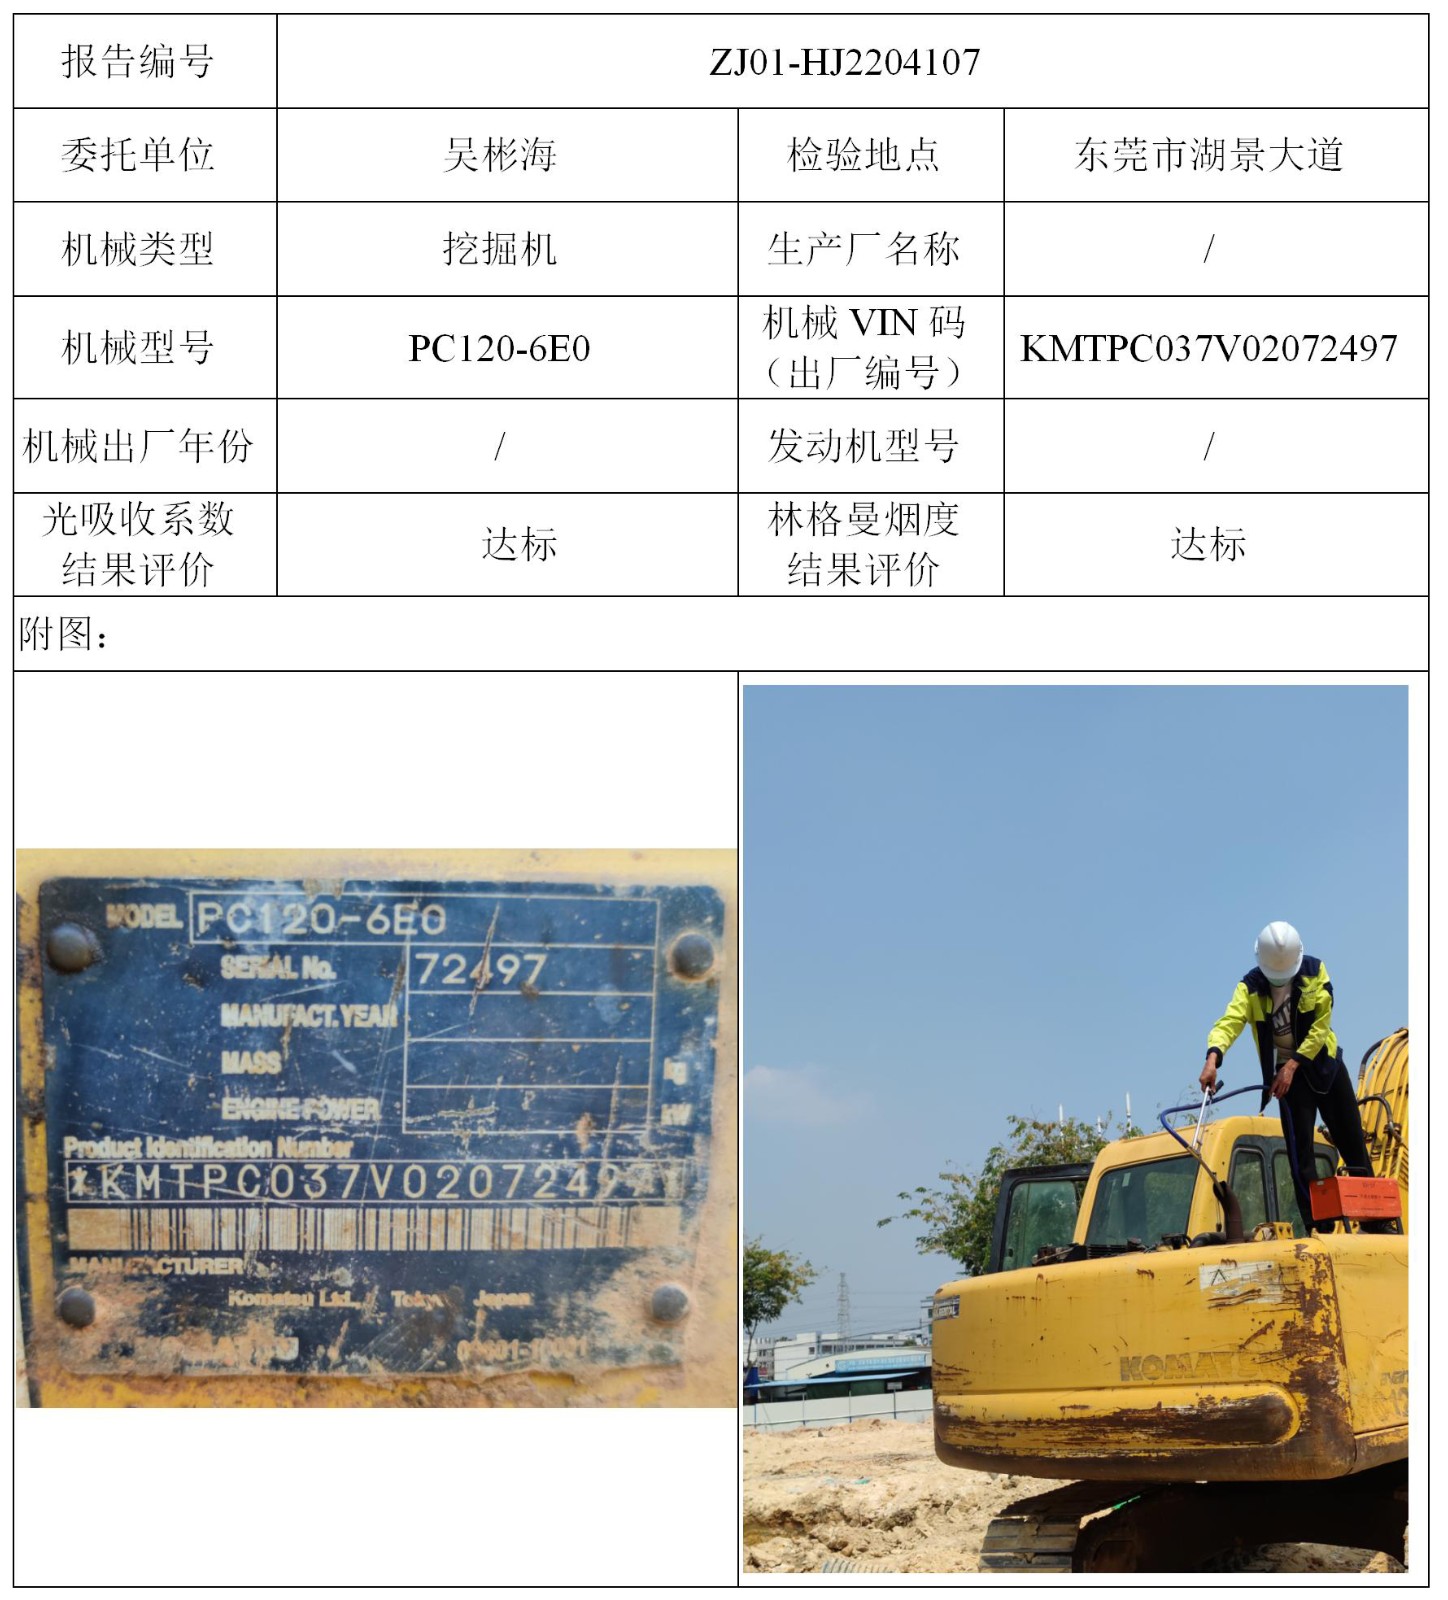 委托-ZJ01-HJ2204107吴彬海的个人挖机（叉车废气）二维码-温家莉_01.jpg